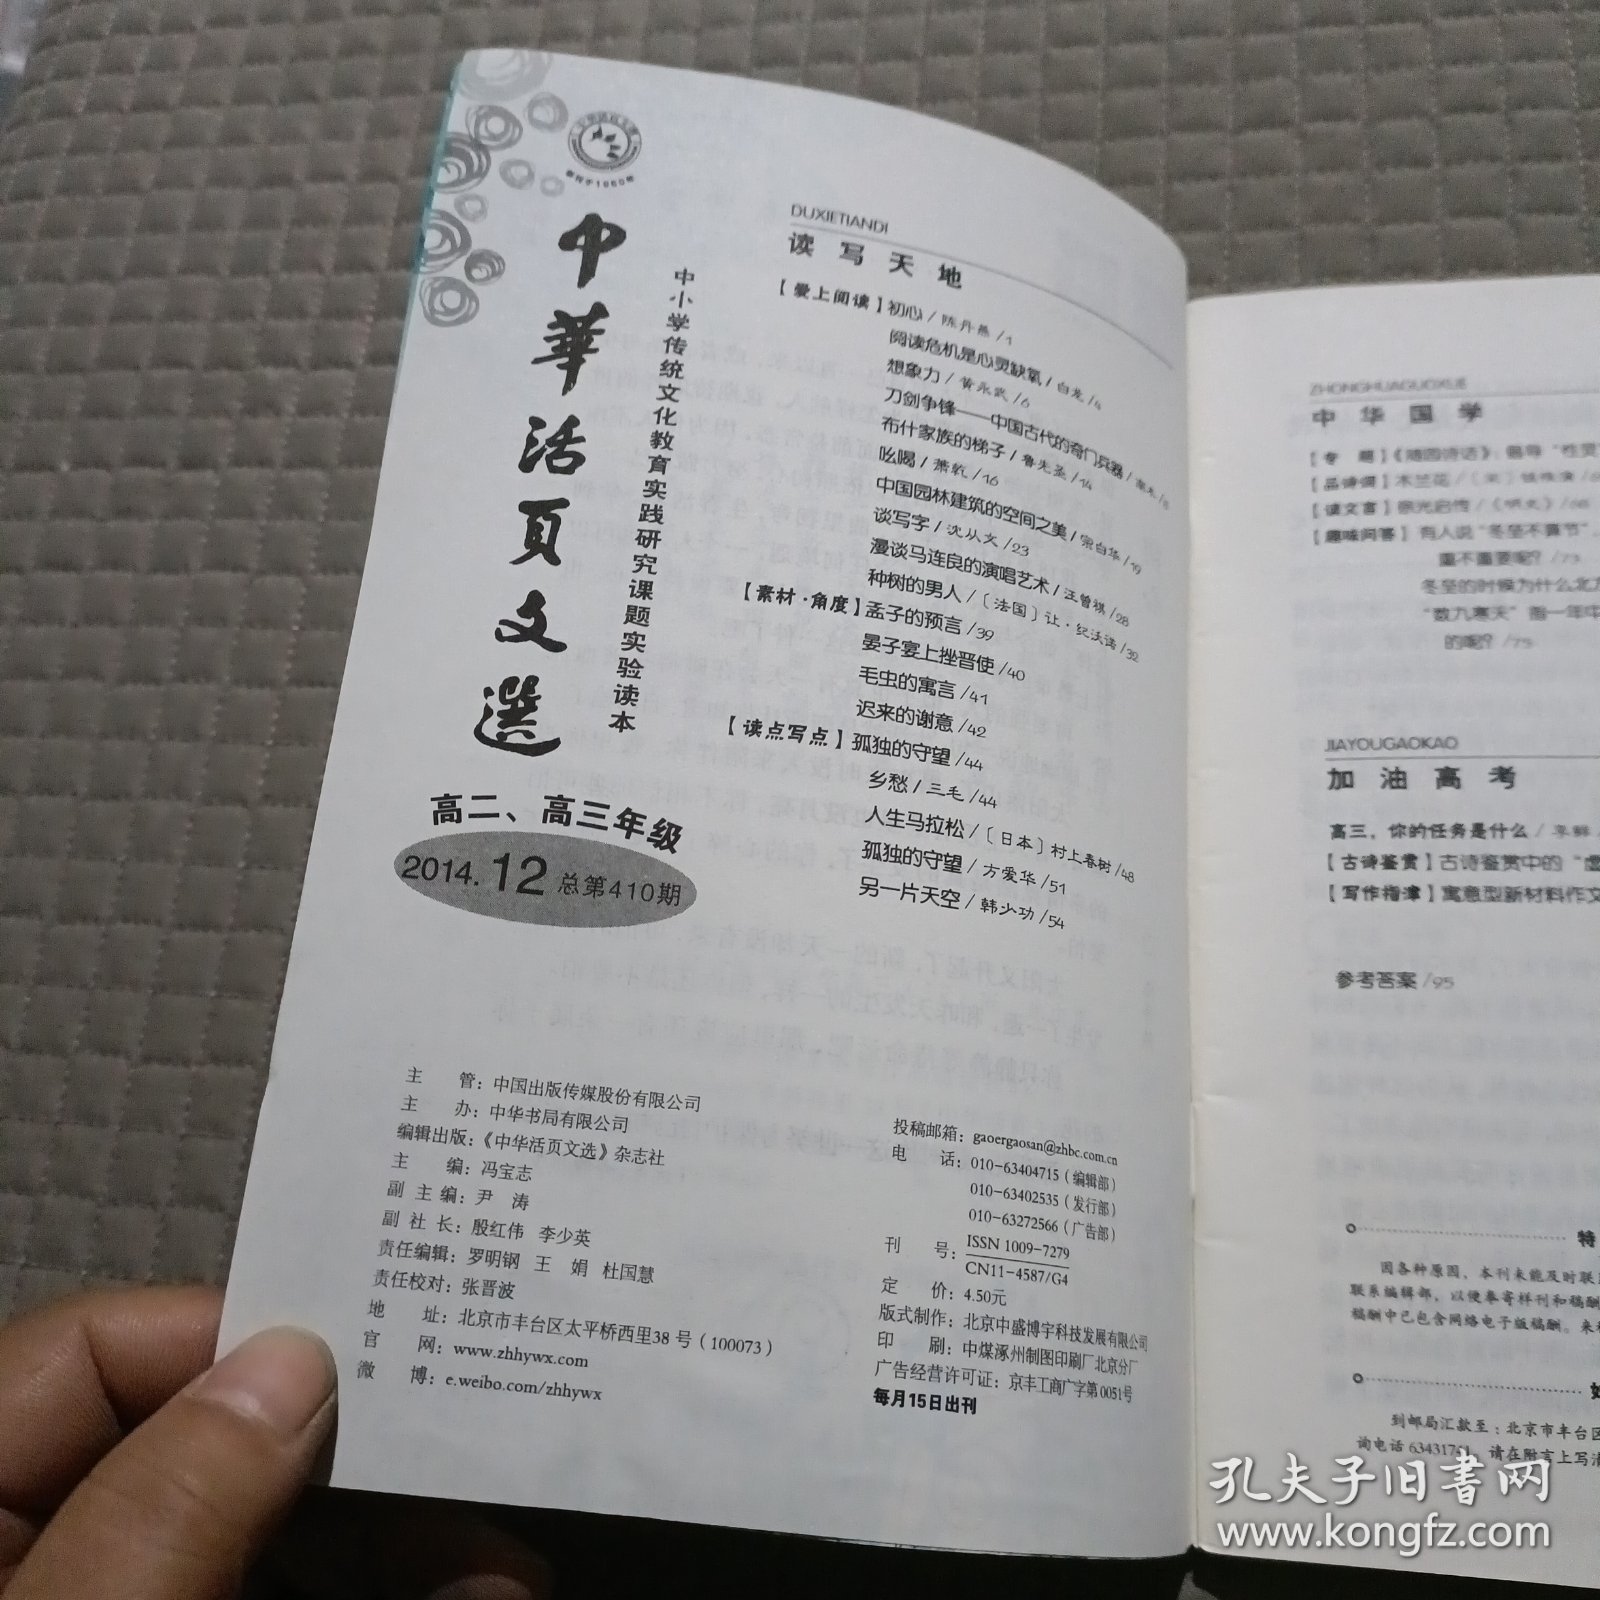 中华活页文选 高二高三年级2014/12